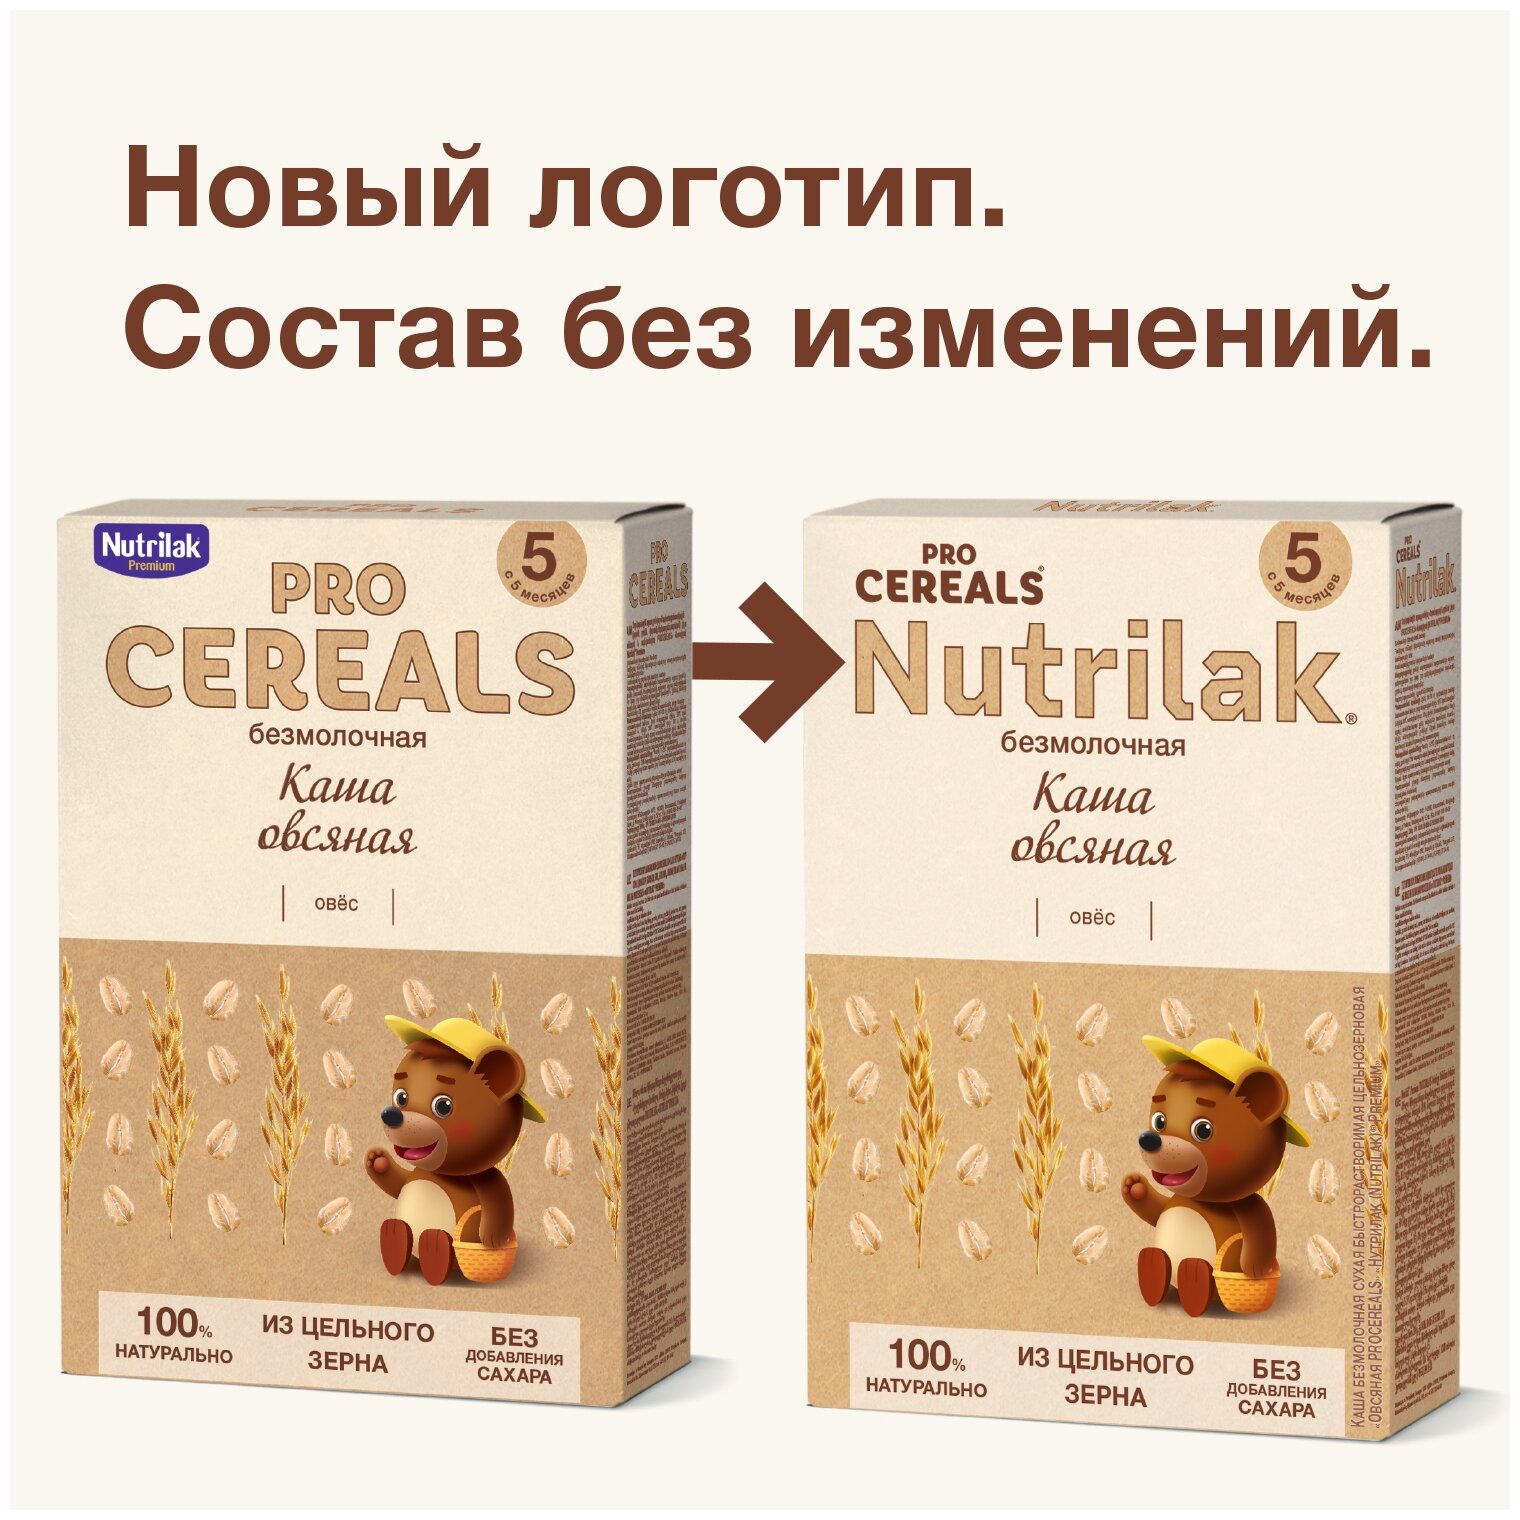 Каша овсяная Nutrilak Premium Pro Cereals цельнозерновая безмолочная, 200гр - фото №2